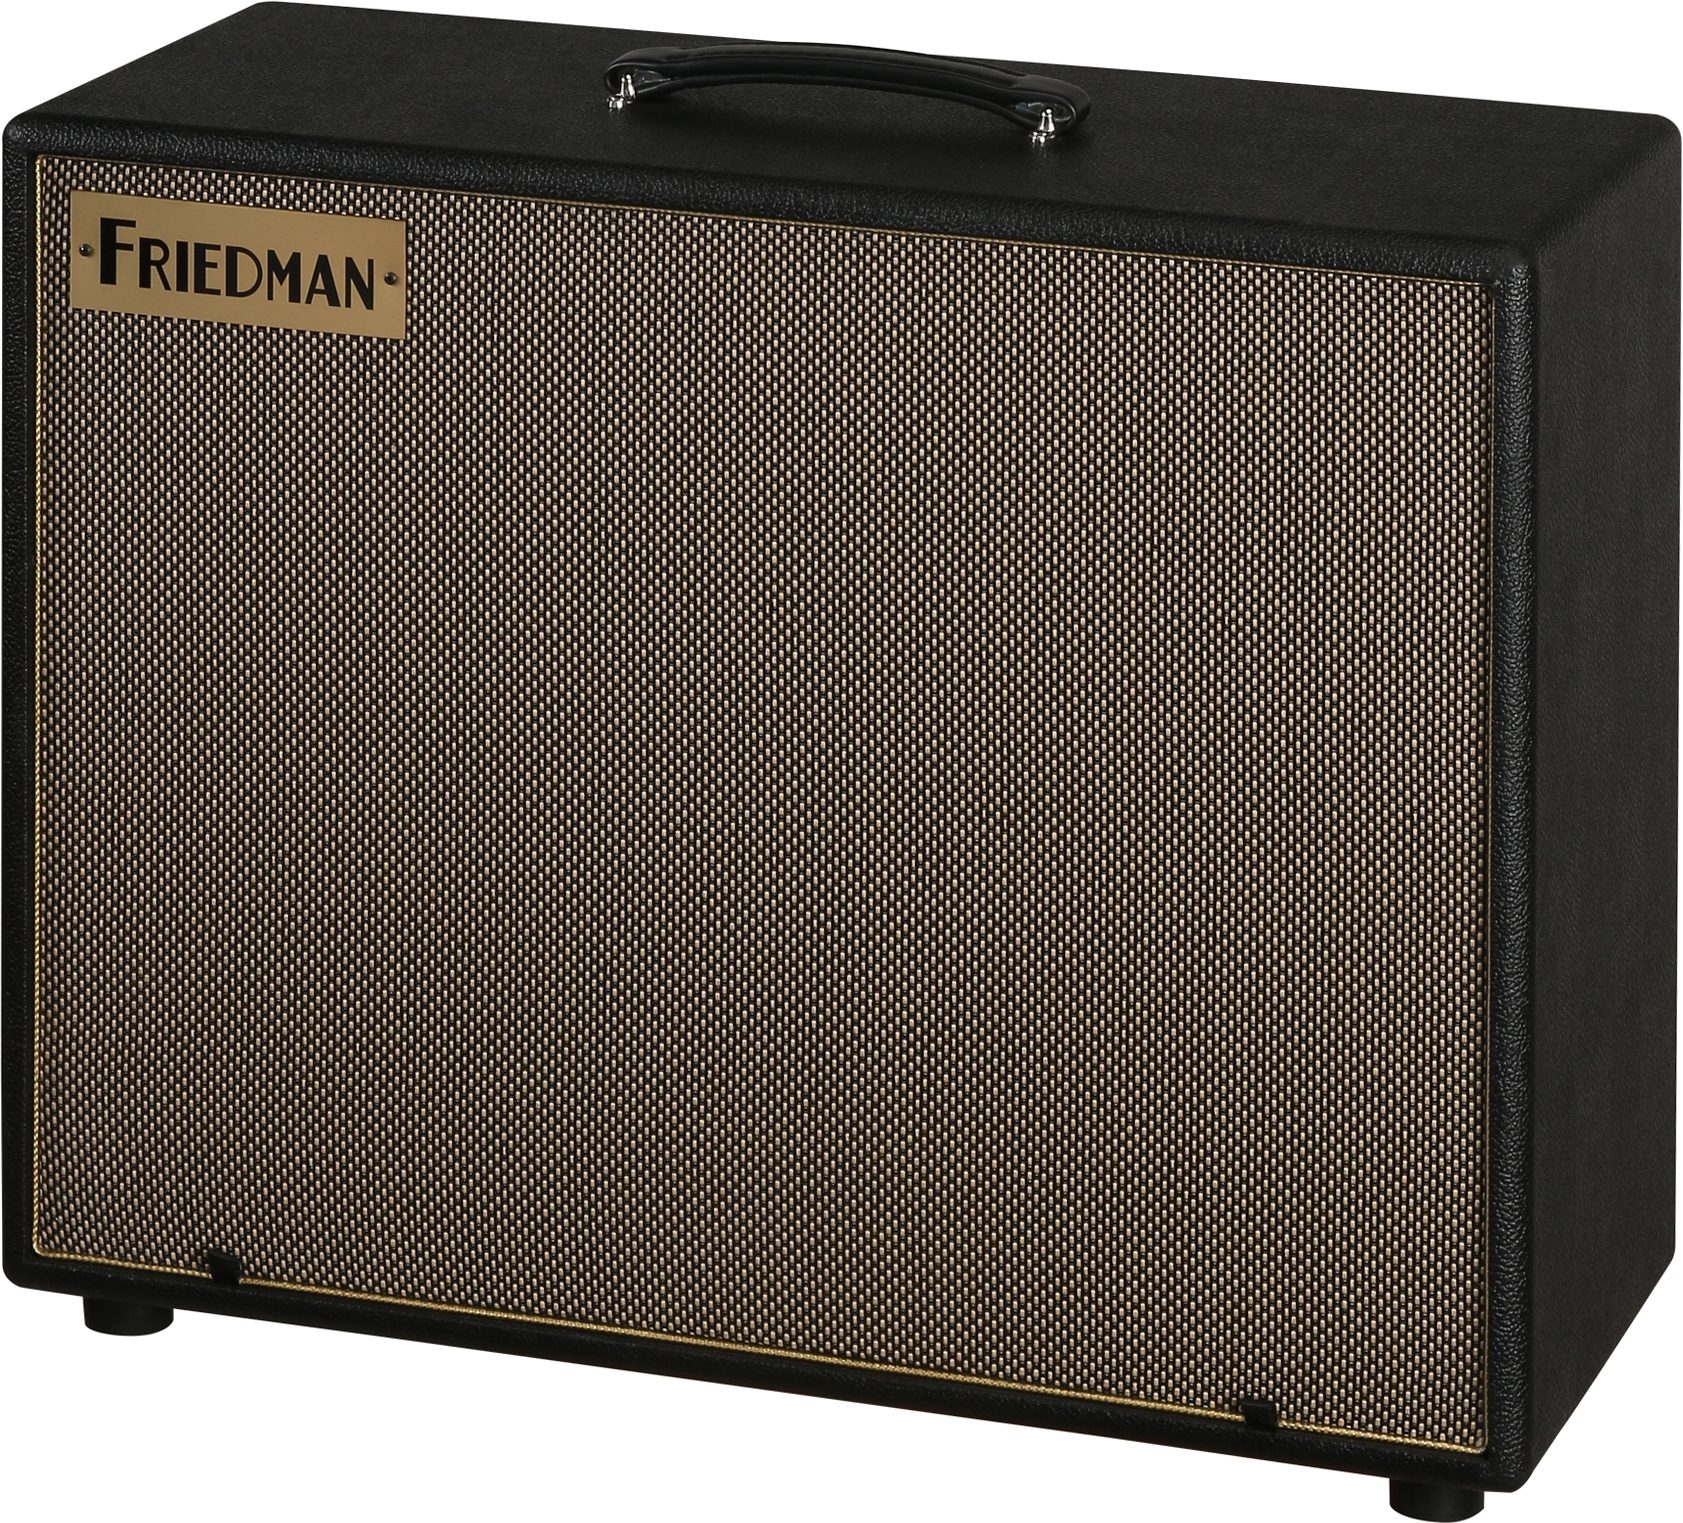 Friedman Asc12 Modeler Monitor Powered Guitar Speaker Cabinet